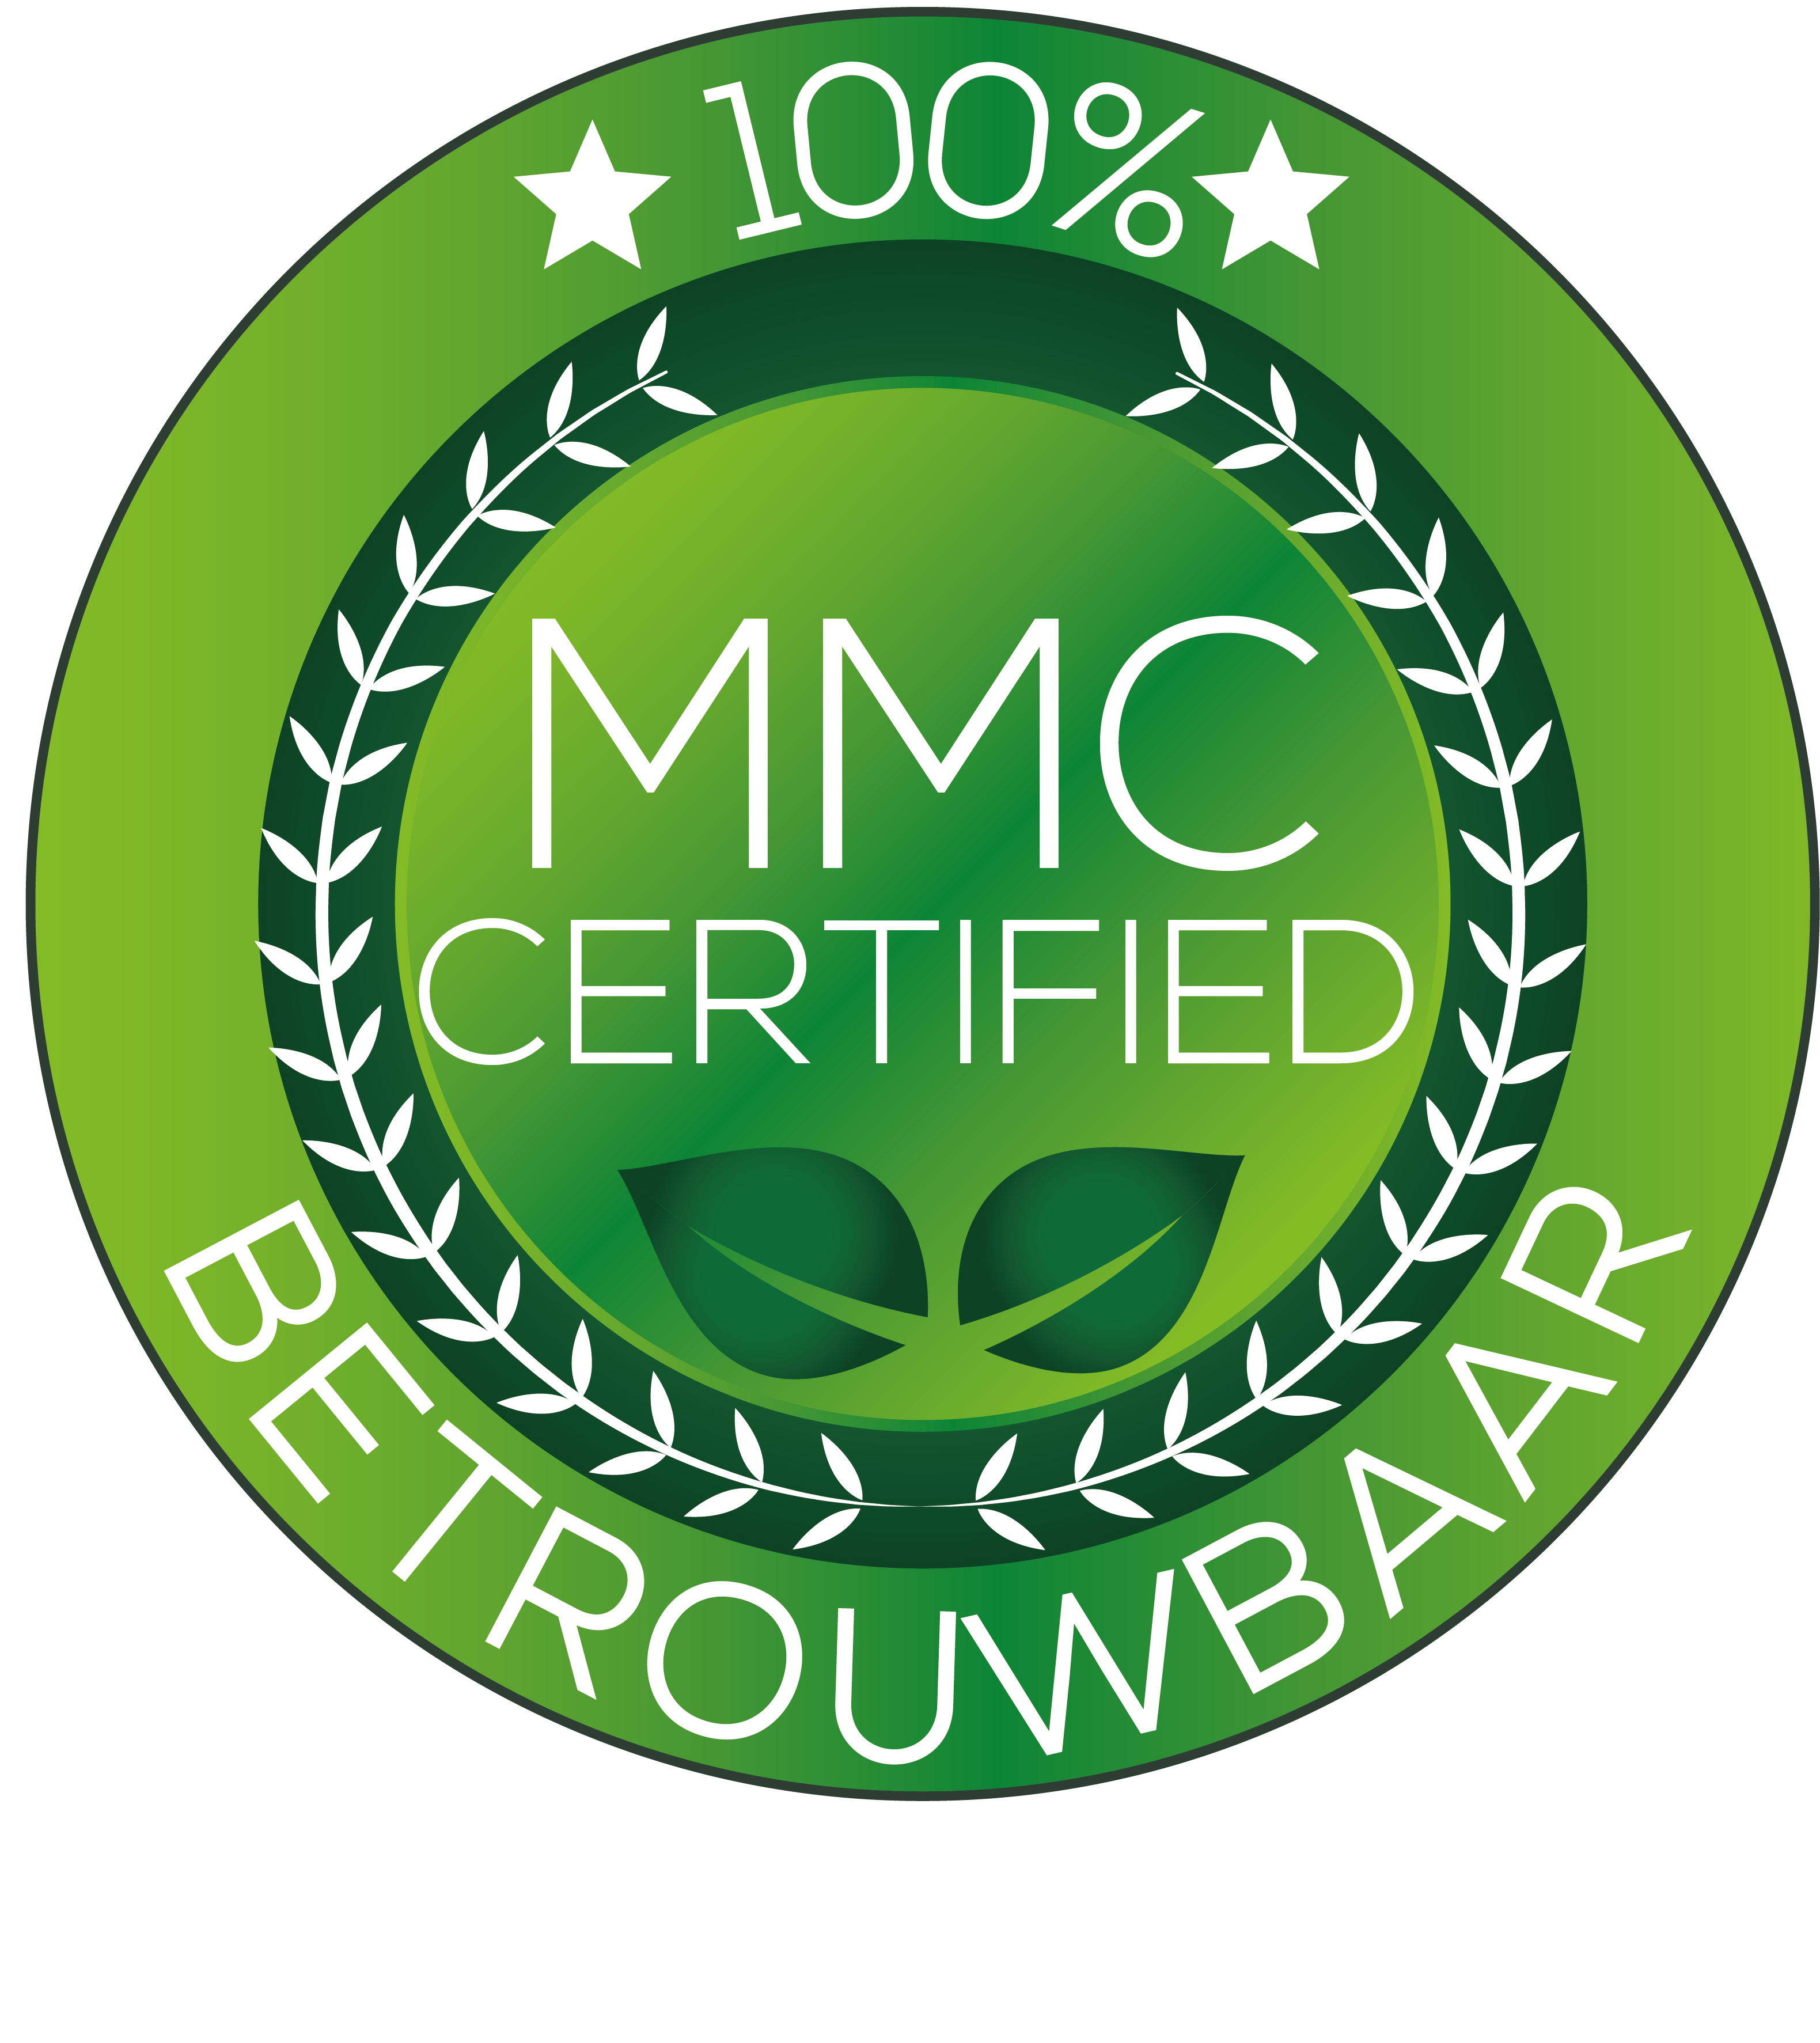 Keurmerk MMC certified